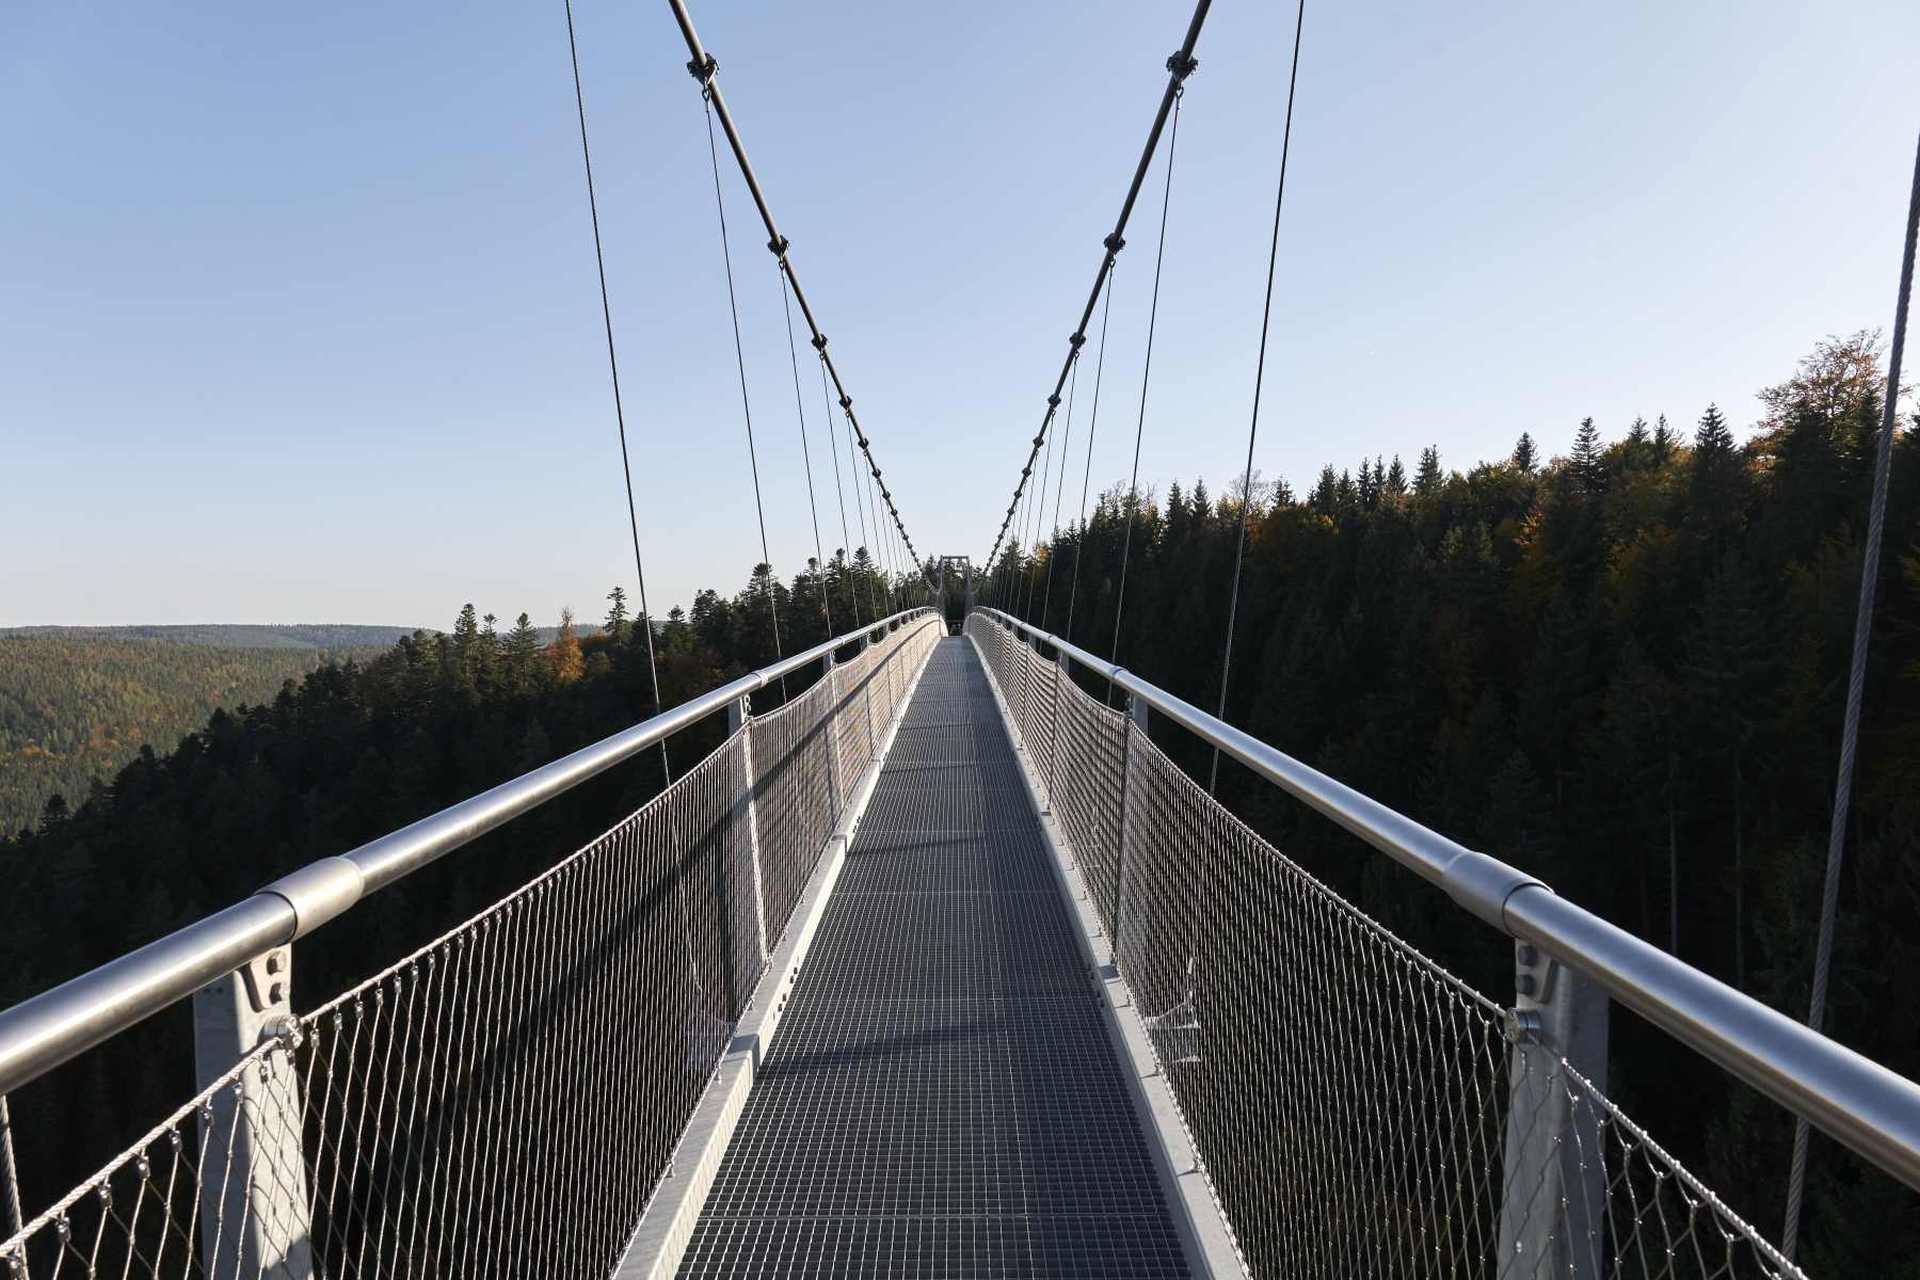 The Wildline bridge is unique as it mounts towards the middle